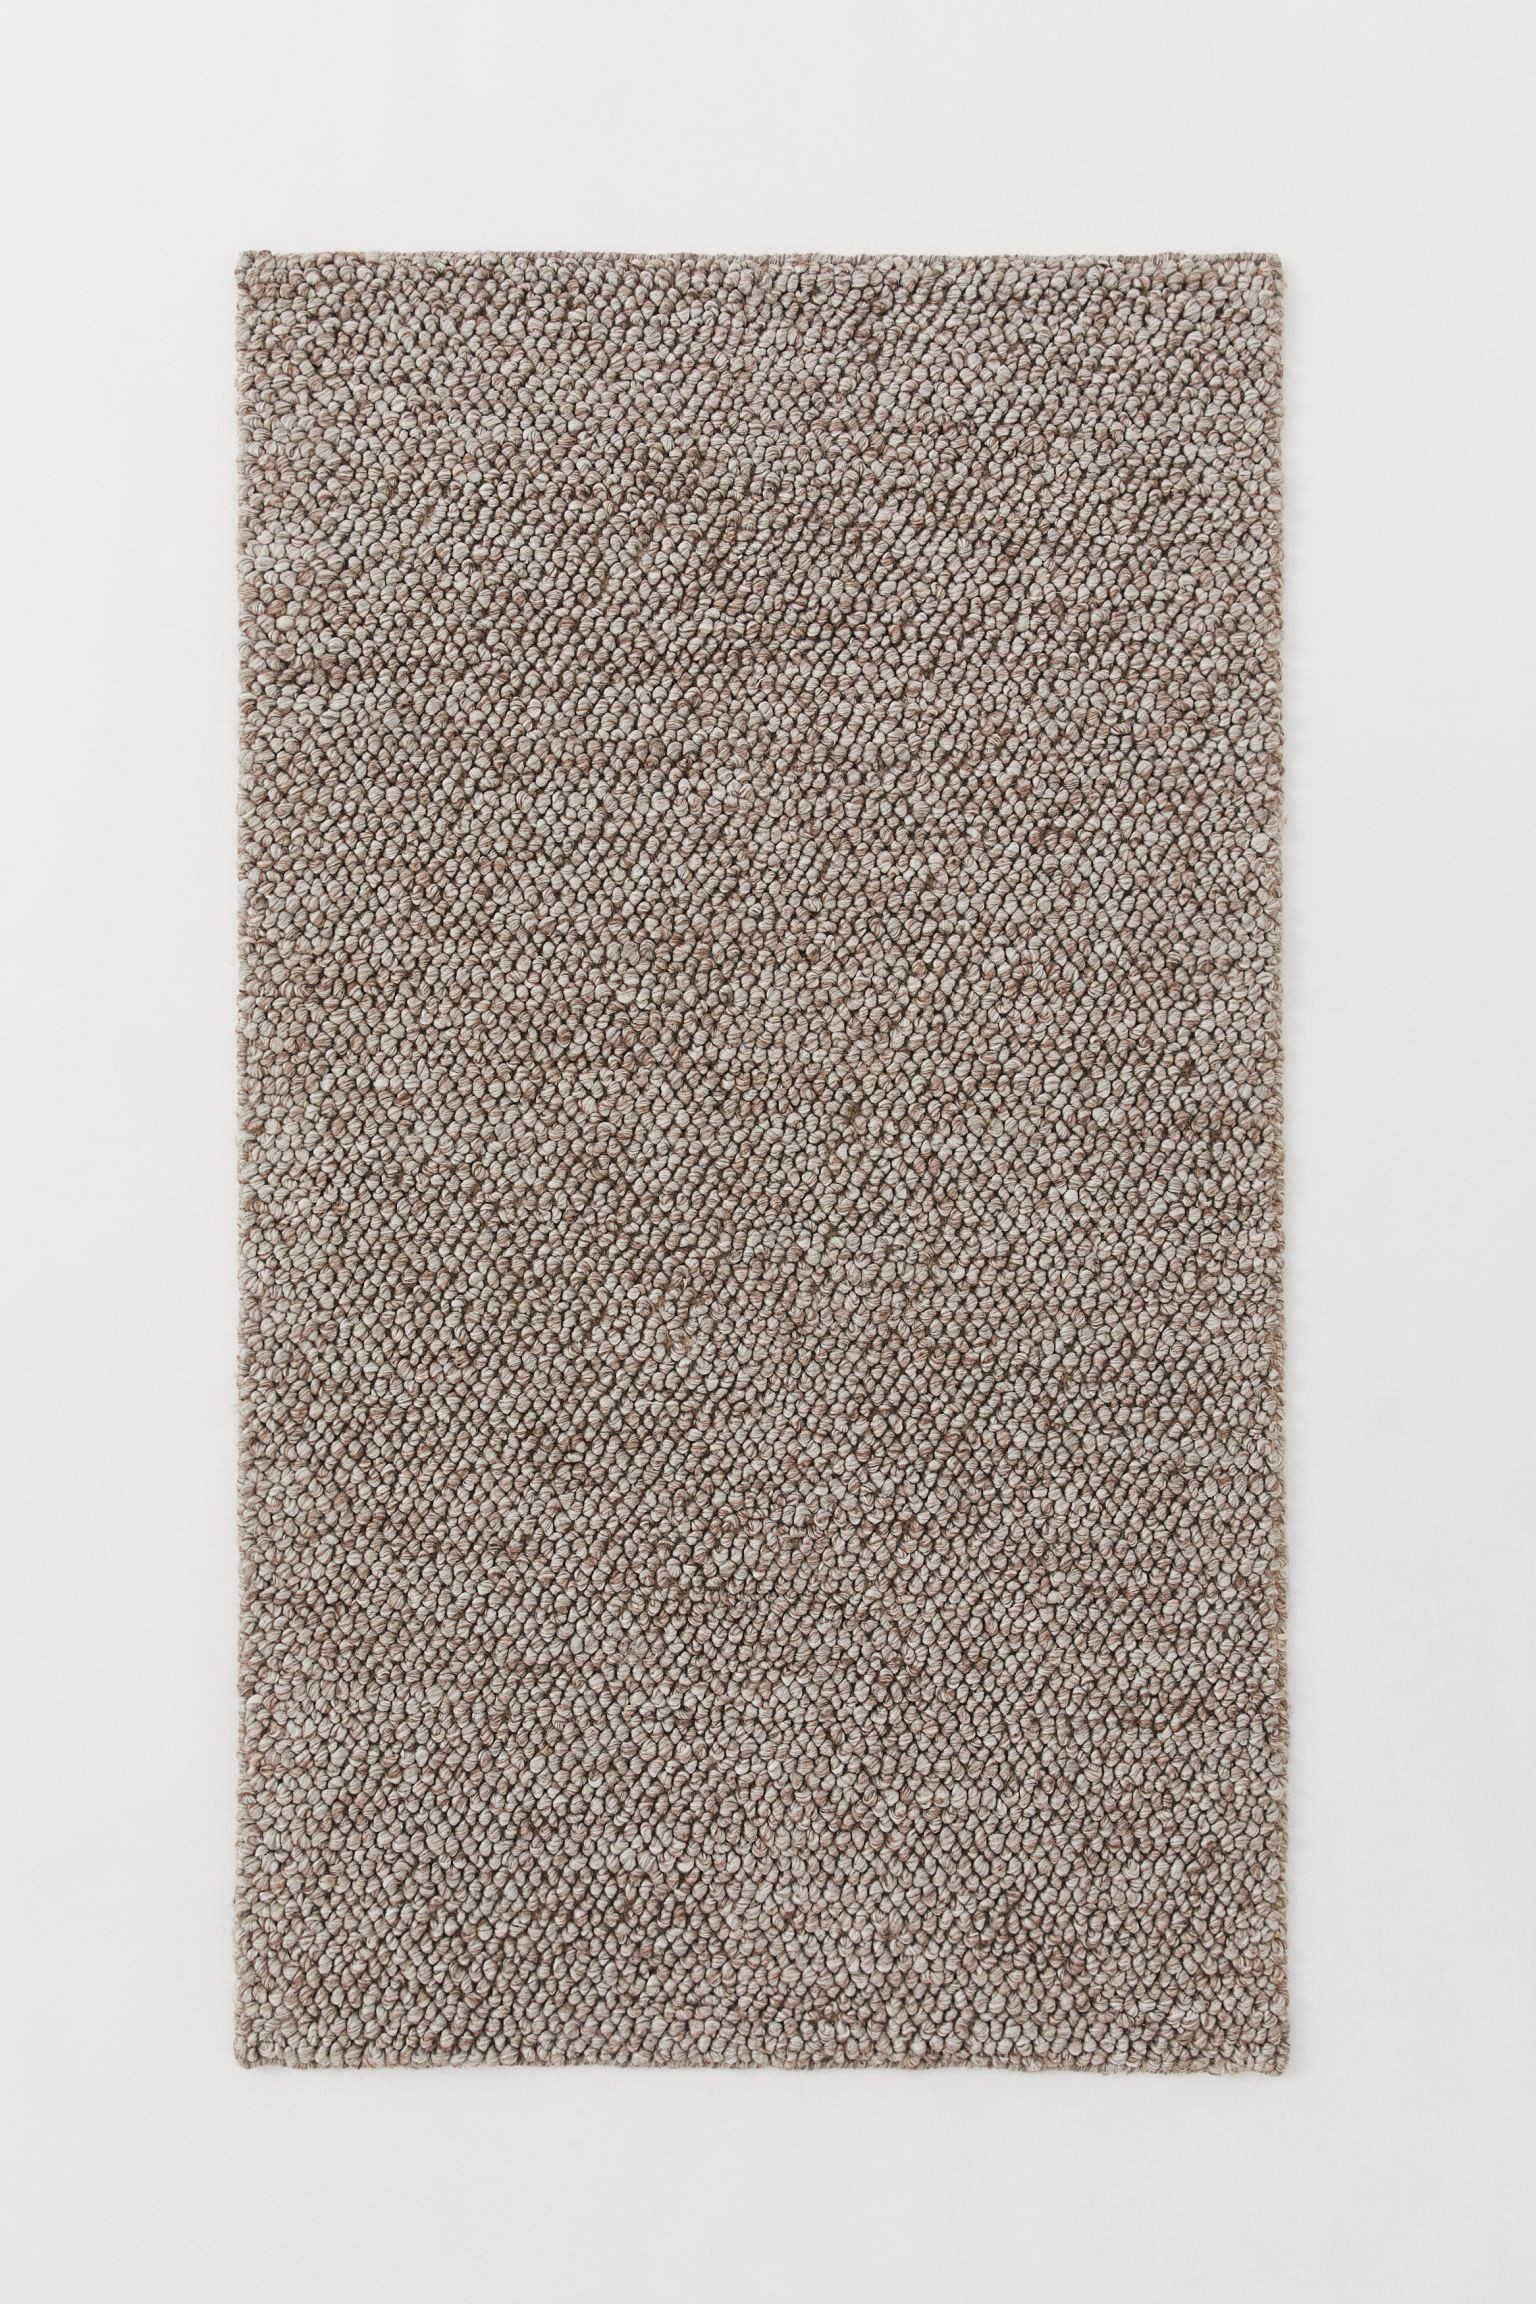 Структурированный коврик из шерсти, Грейдж, 80x140